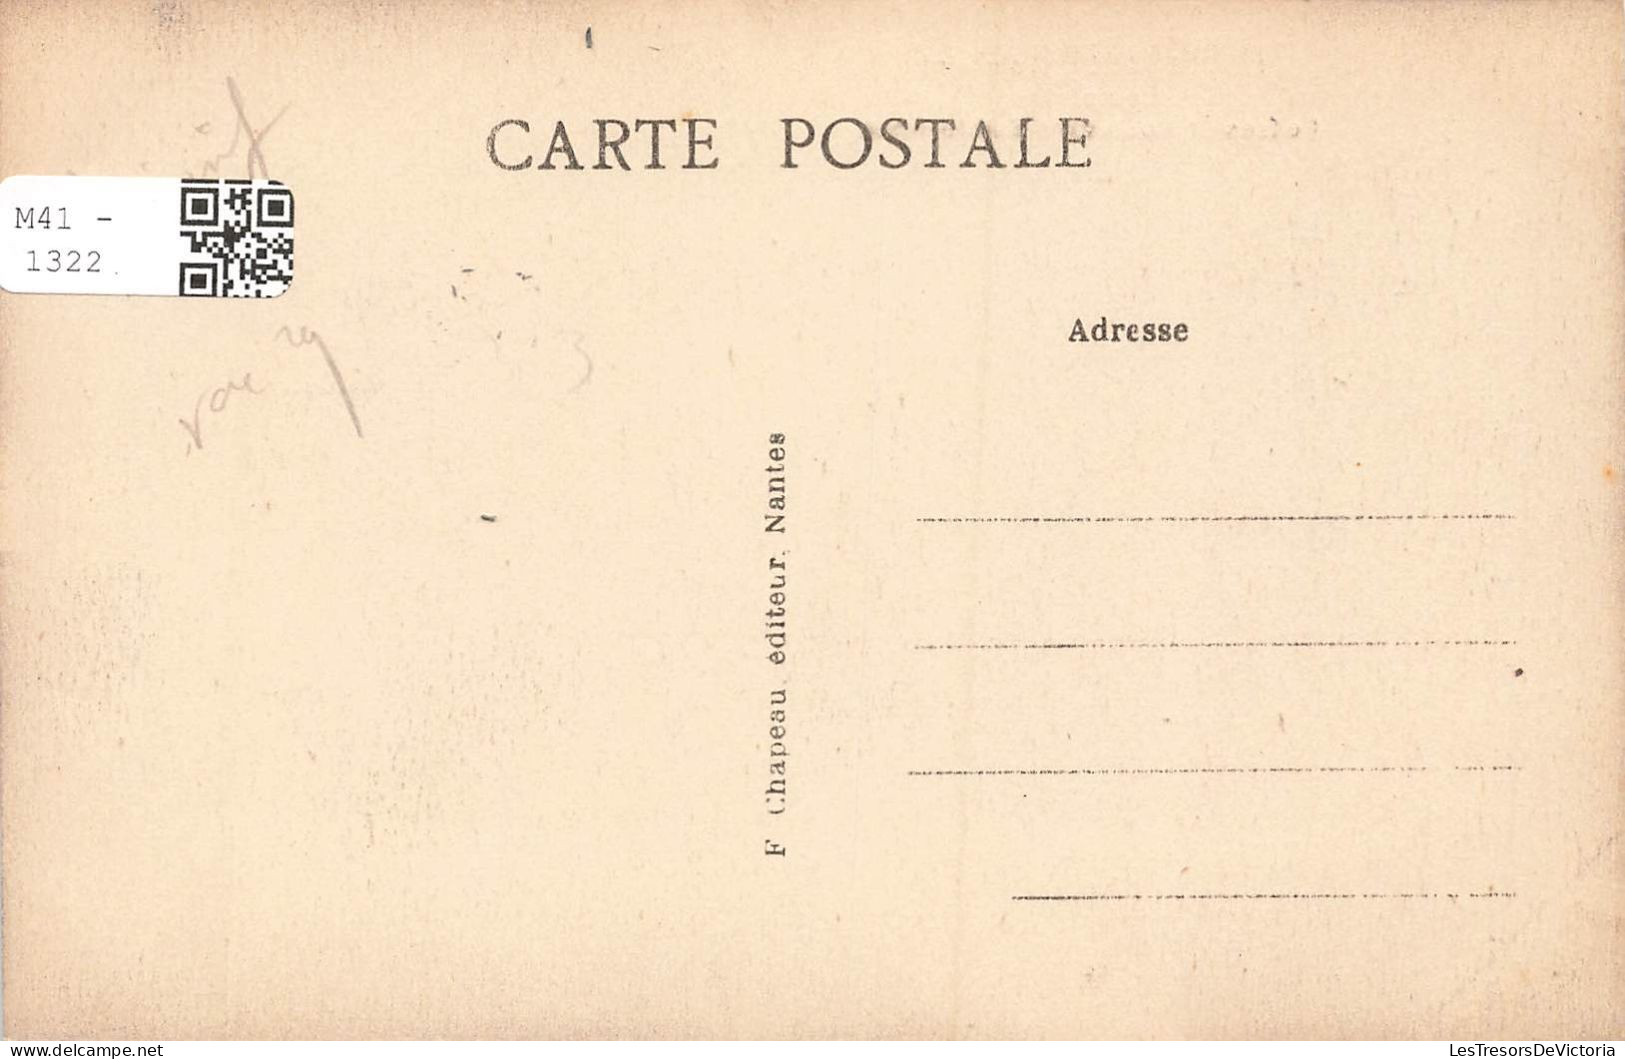 FRANCE - Guérande - Remparts - Fossés Et Boulevard Sainte Anne - Carte Postale Ancienne - Guérande